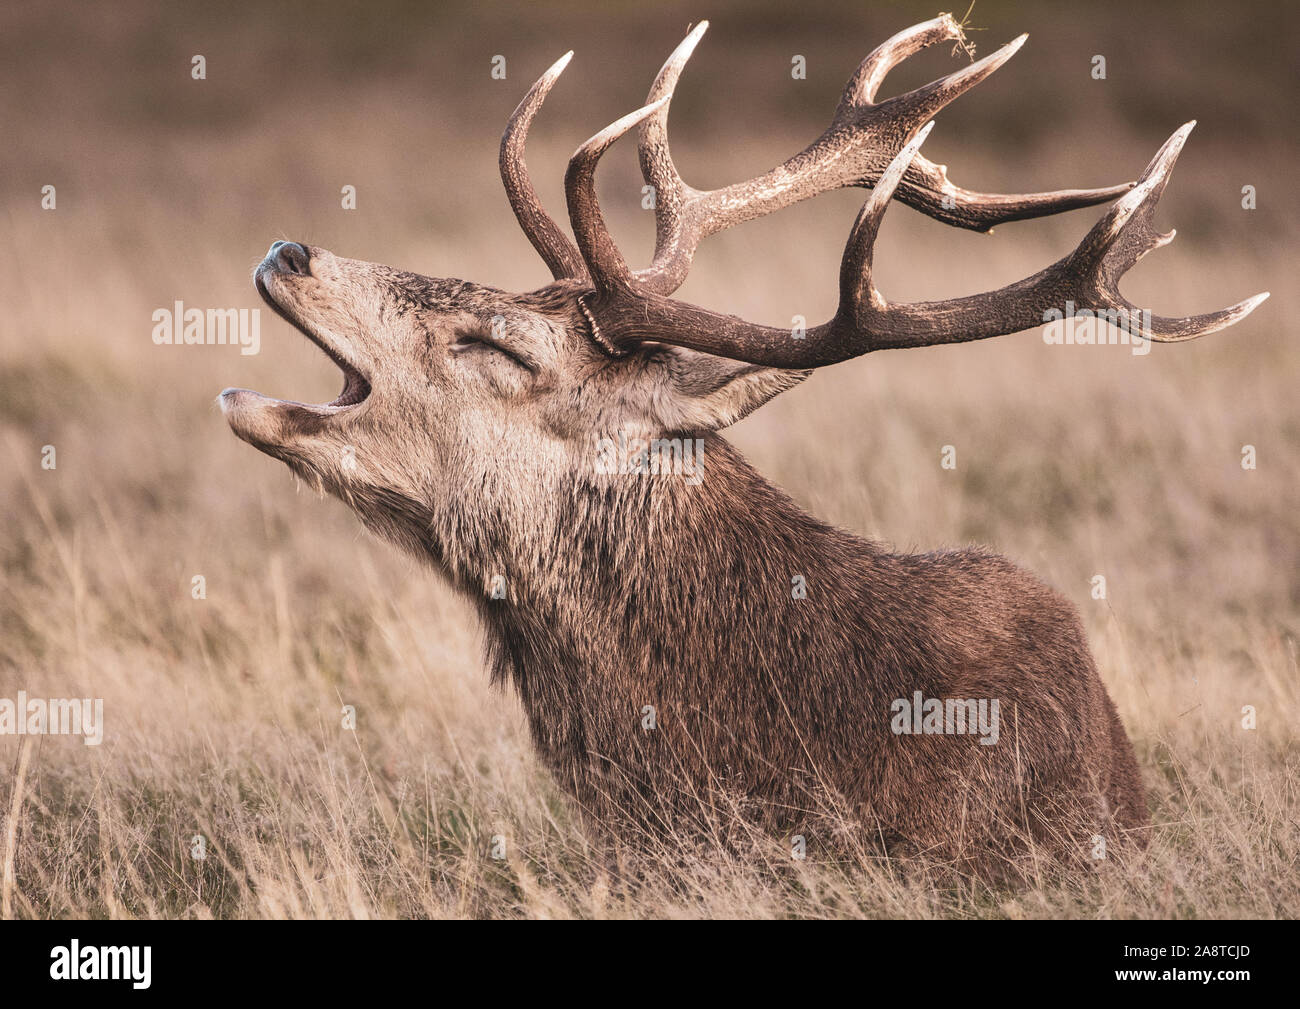 Une famille red deer stag appelant dans les bois du Bushy Park, Londres, en Angleterre. Pris un froid et brumeux matin d'automne au cours de saison du rut Banque D'Images